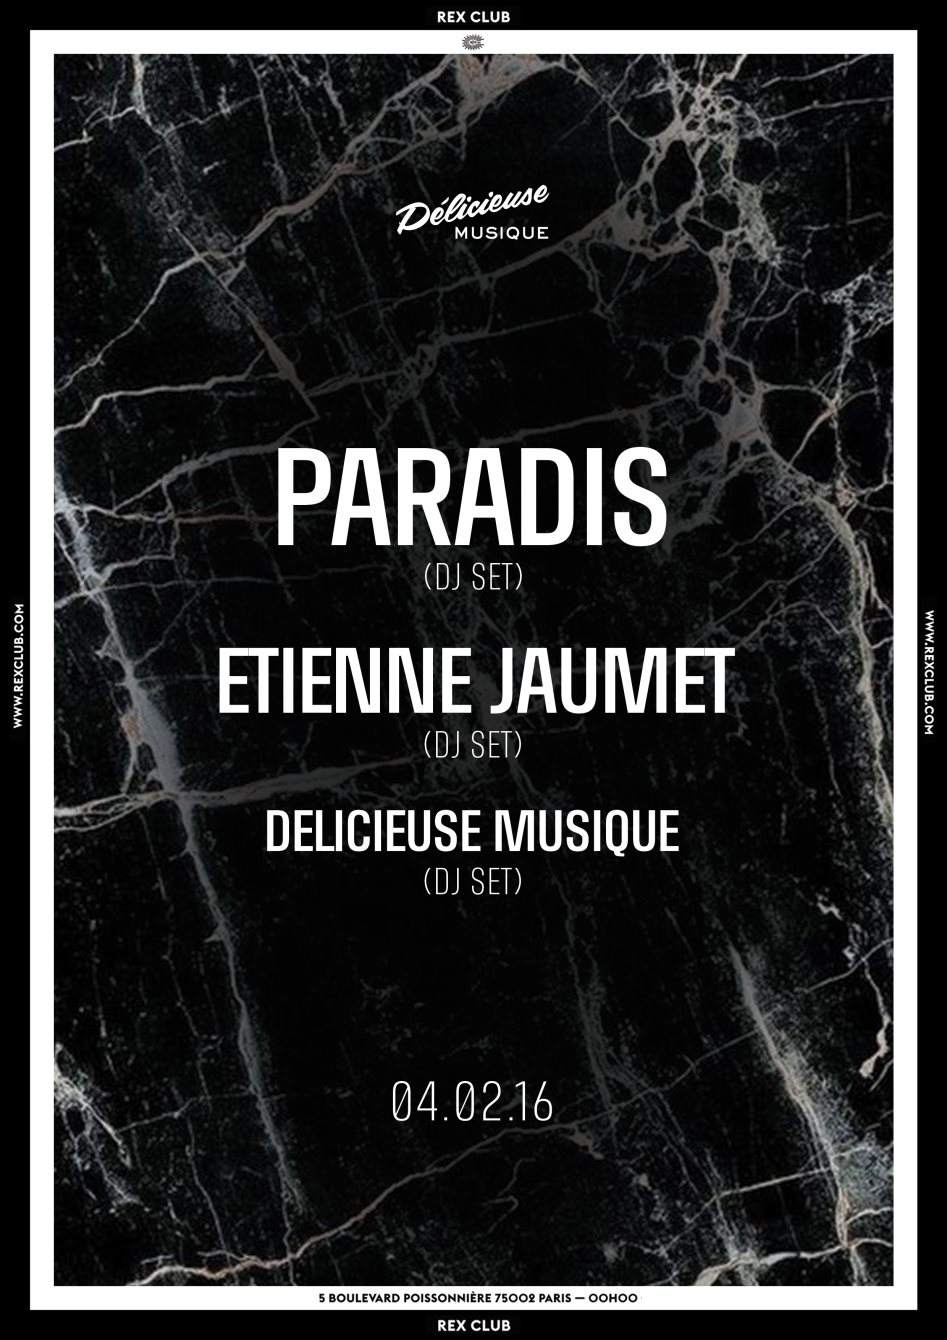 Delicieuse Musique: Paradis, Etienne Jaumet, Delicieuse Djs - Página frontal